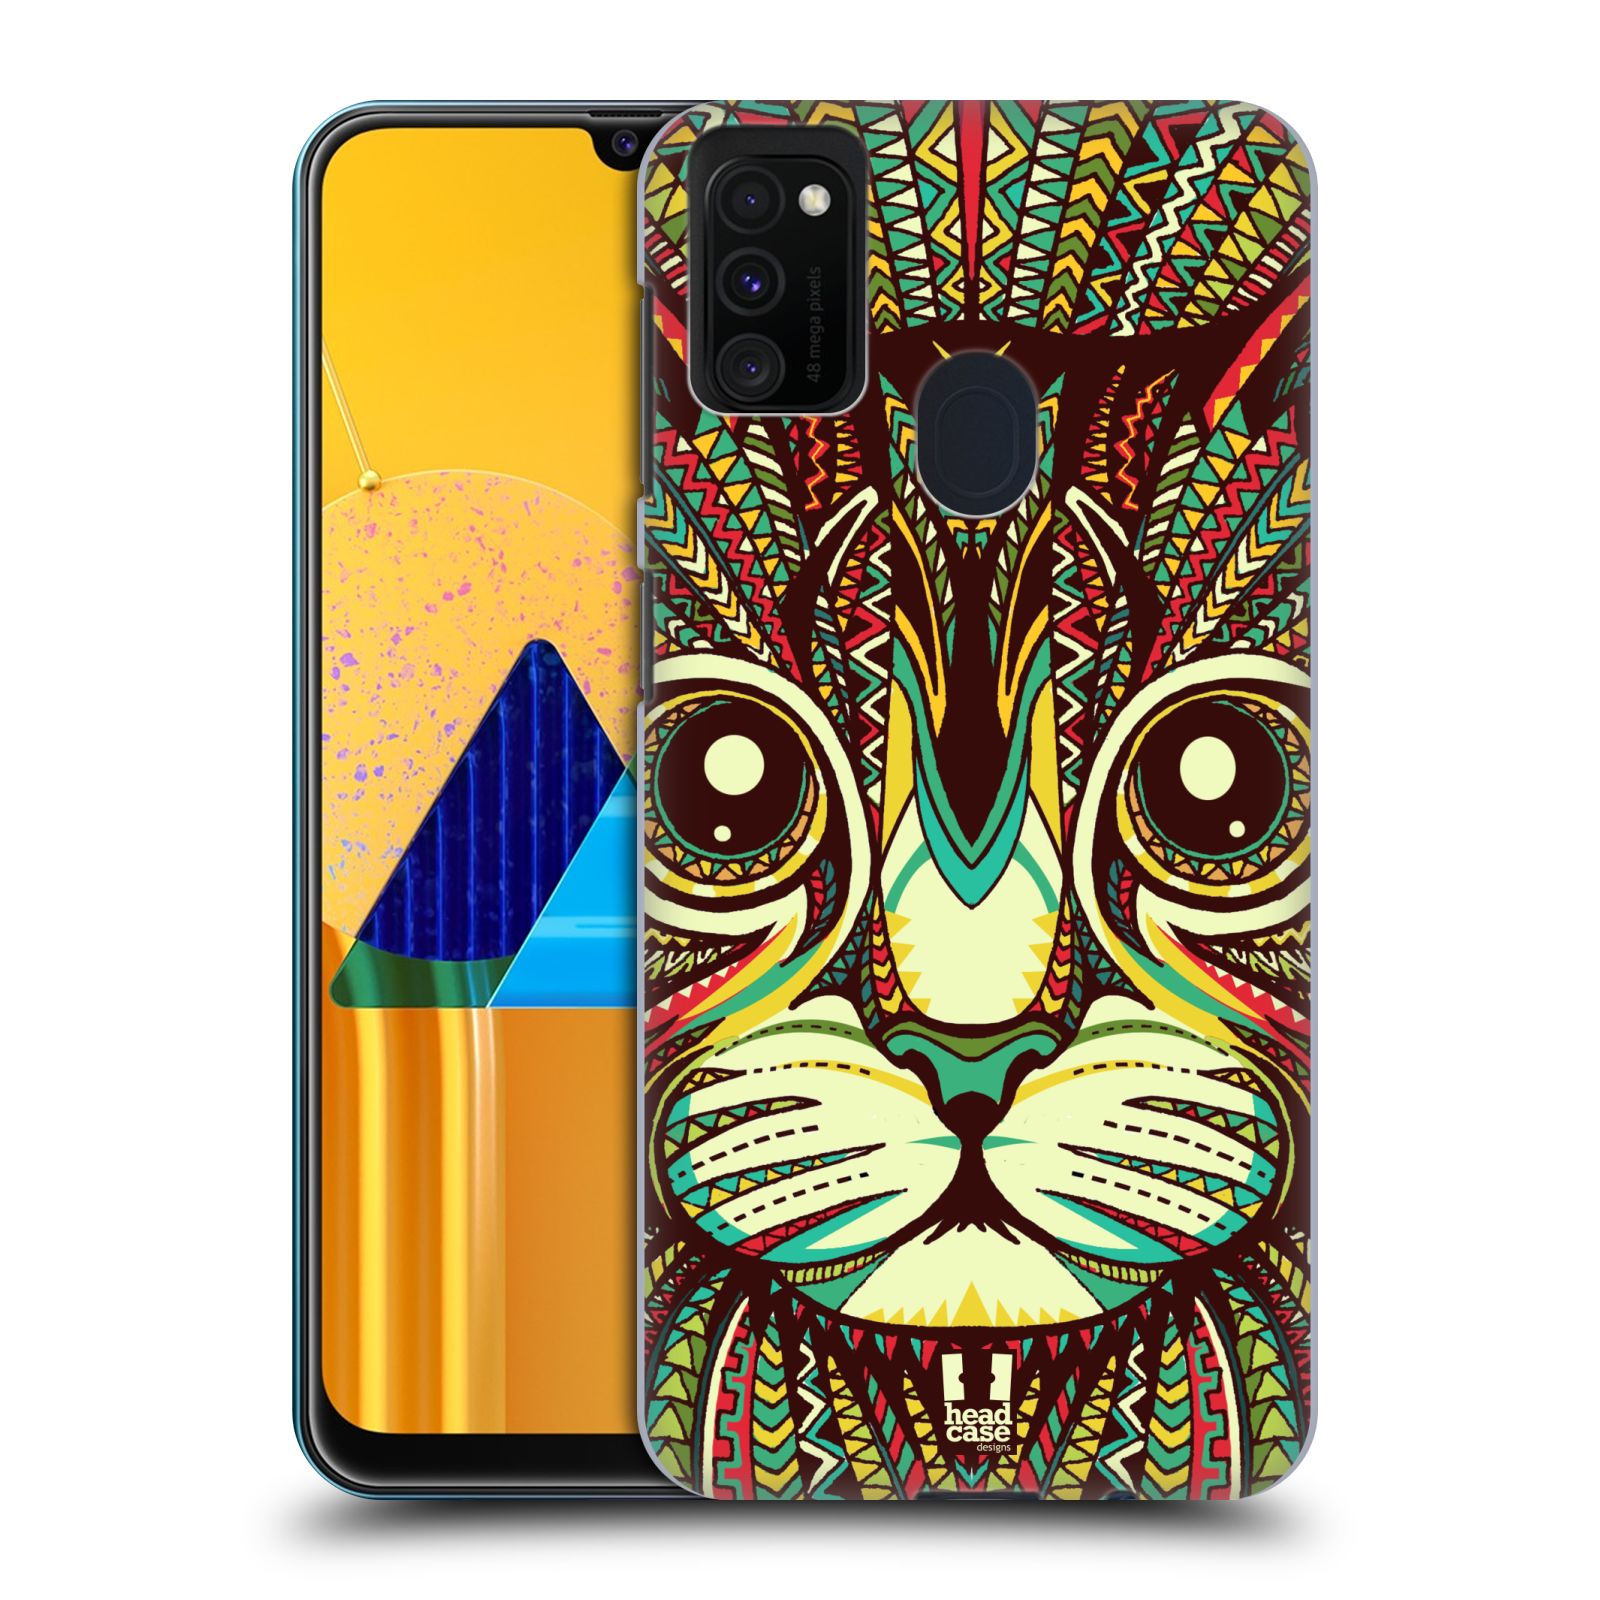 Plastový obal HEAD CASE na mobil Samsung Galaxy M30s vzor Aztécký motiv zvíře 2 kotě